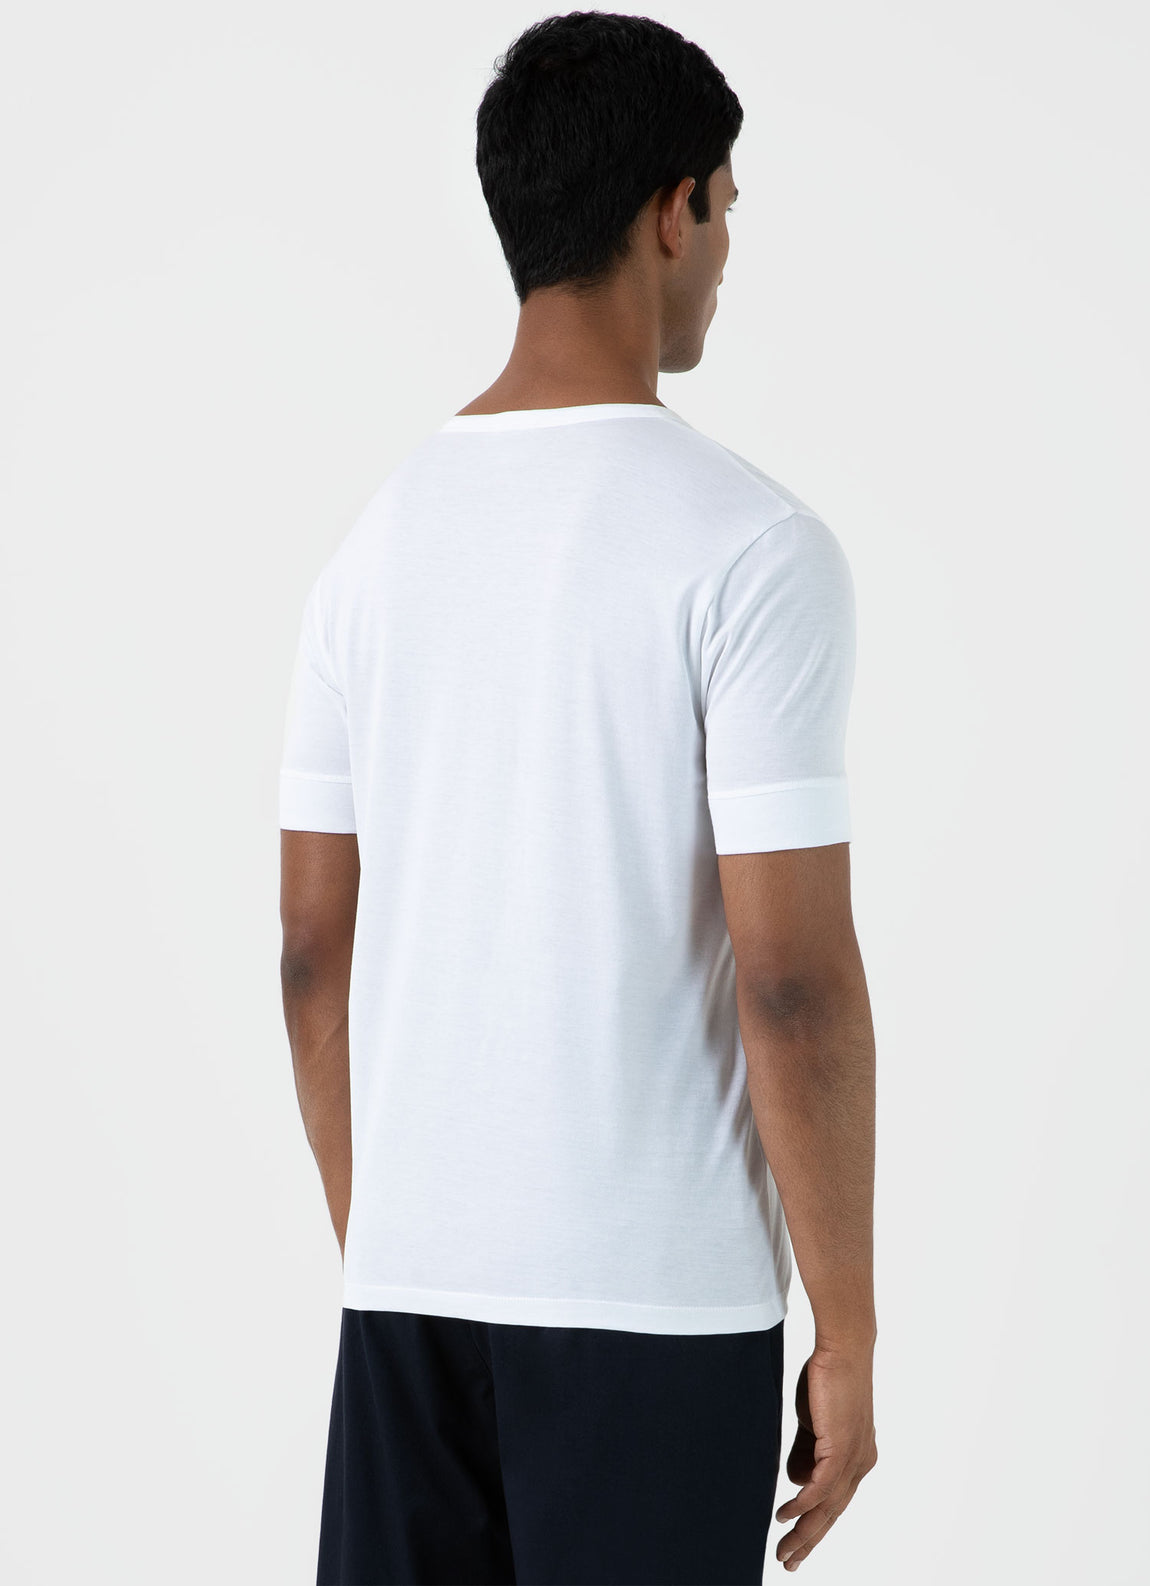 Men's Henley T-shirt in White | Sunspel